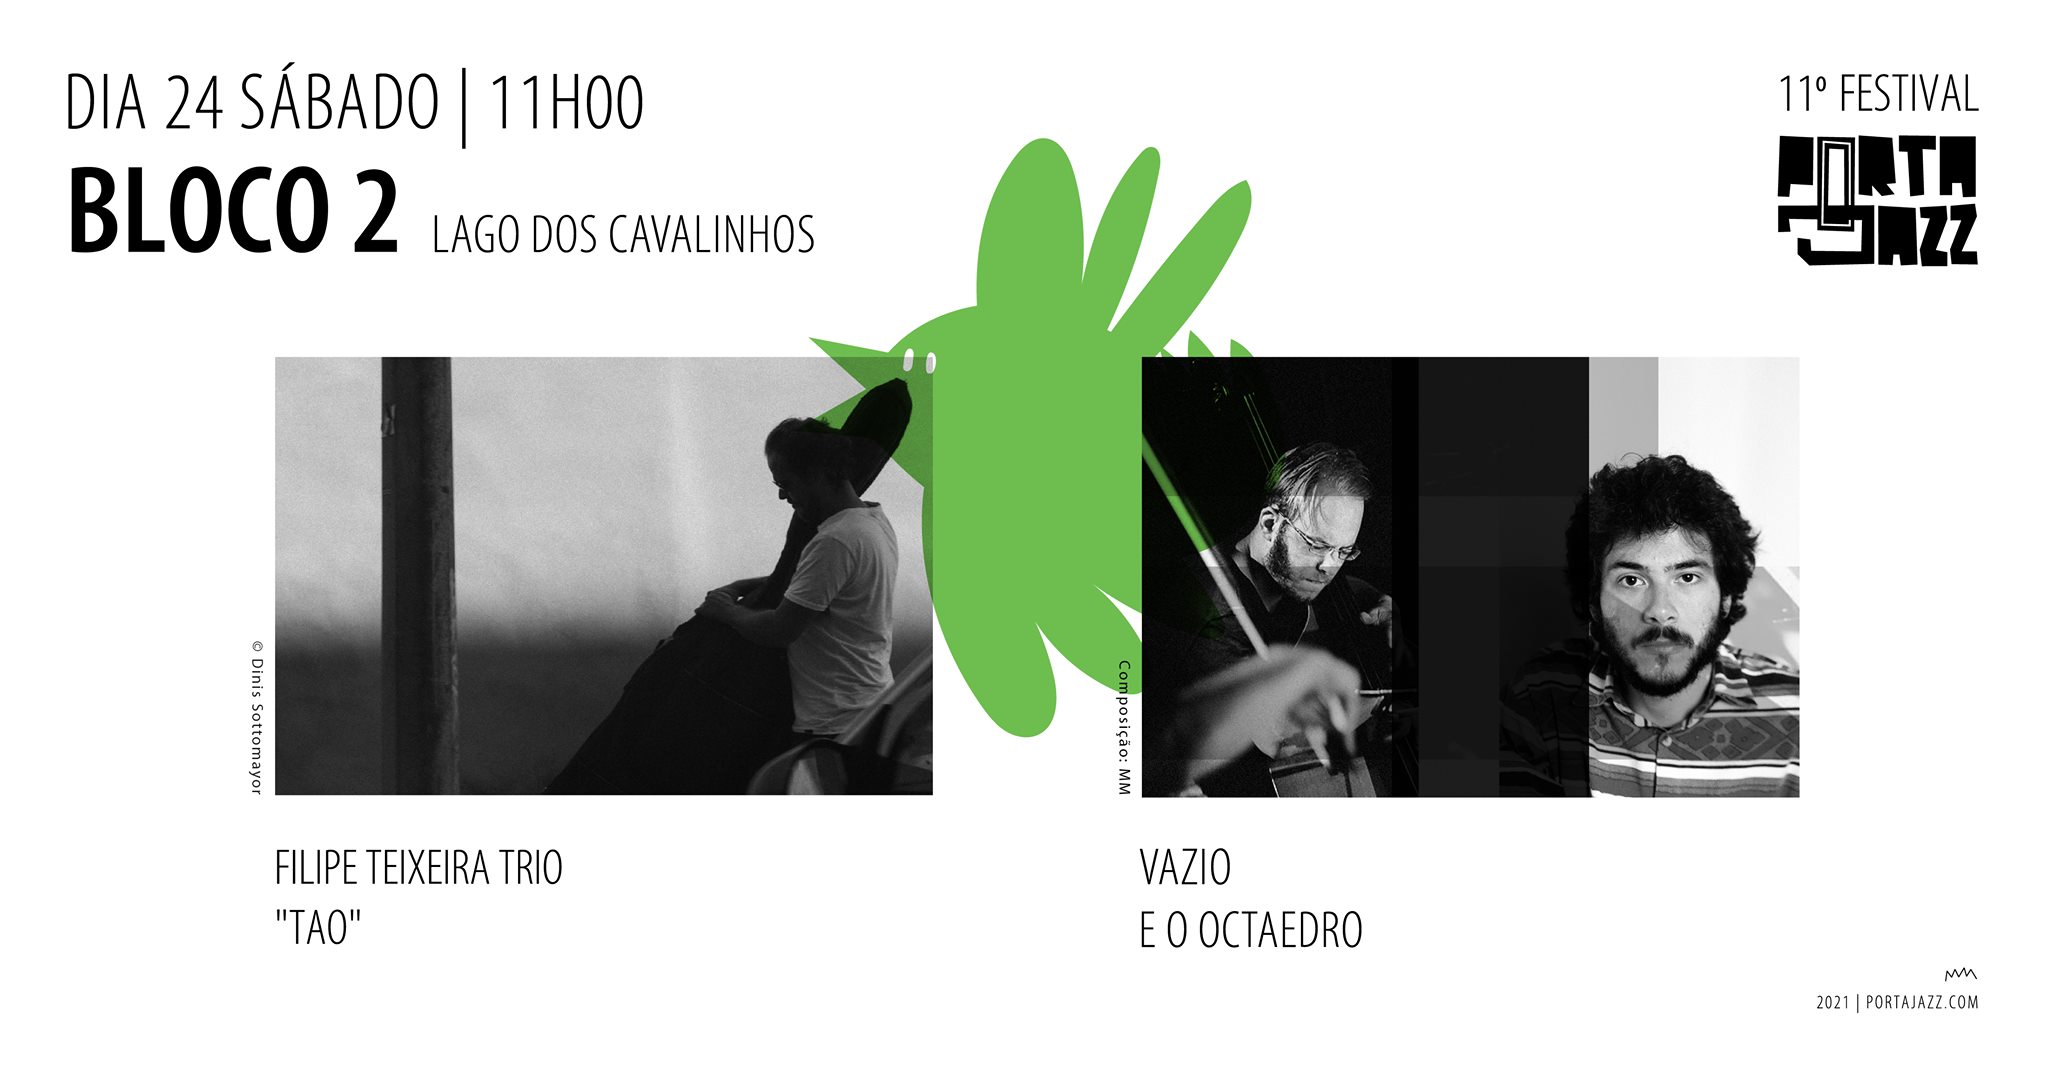 11º Festival Porta-Jazz || Bloco 2 | Filipe Teixeira 'Tao' + Vazio e o Octaedro